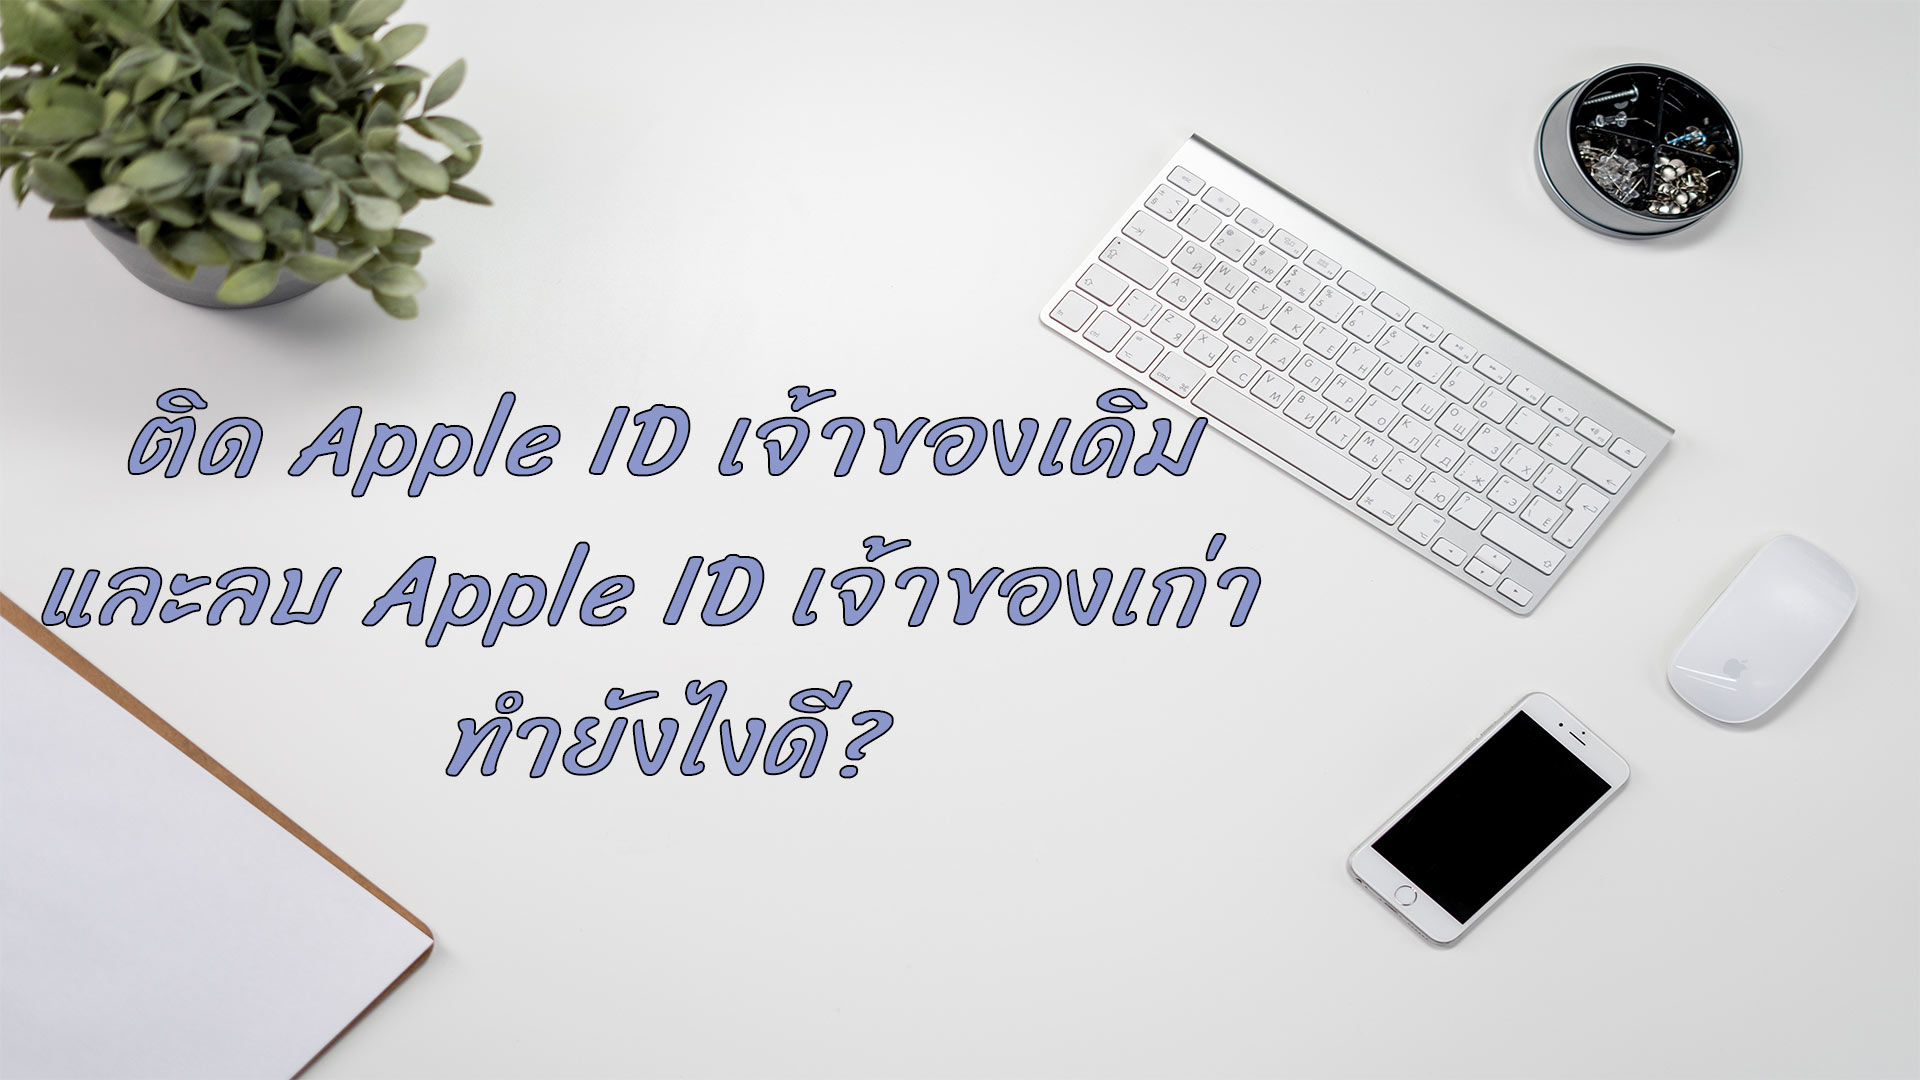 ติด Apple ID เจ้าของเดิมและลบ Apple ID เจ้าของเก่า ทำยังไงดี?